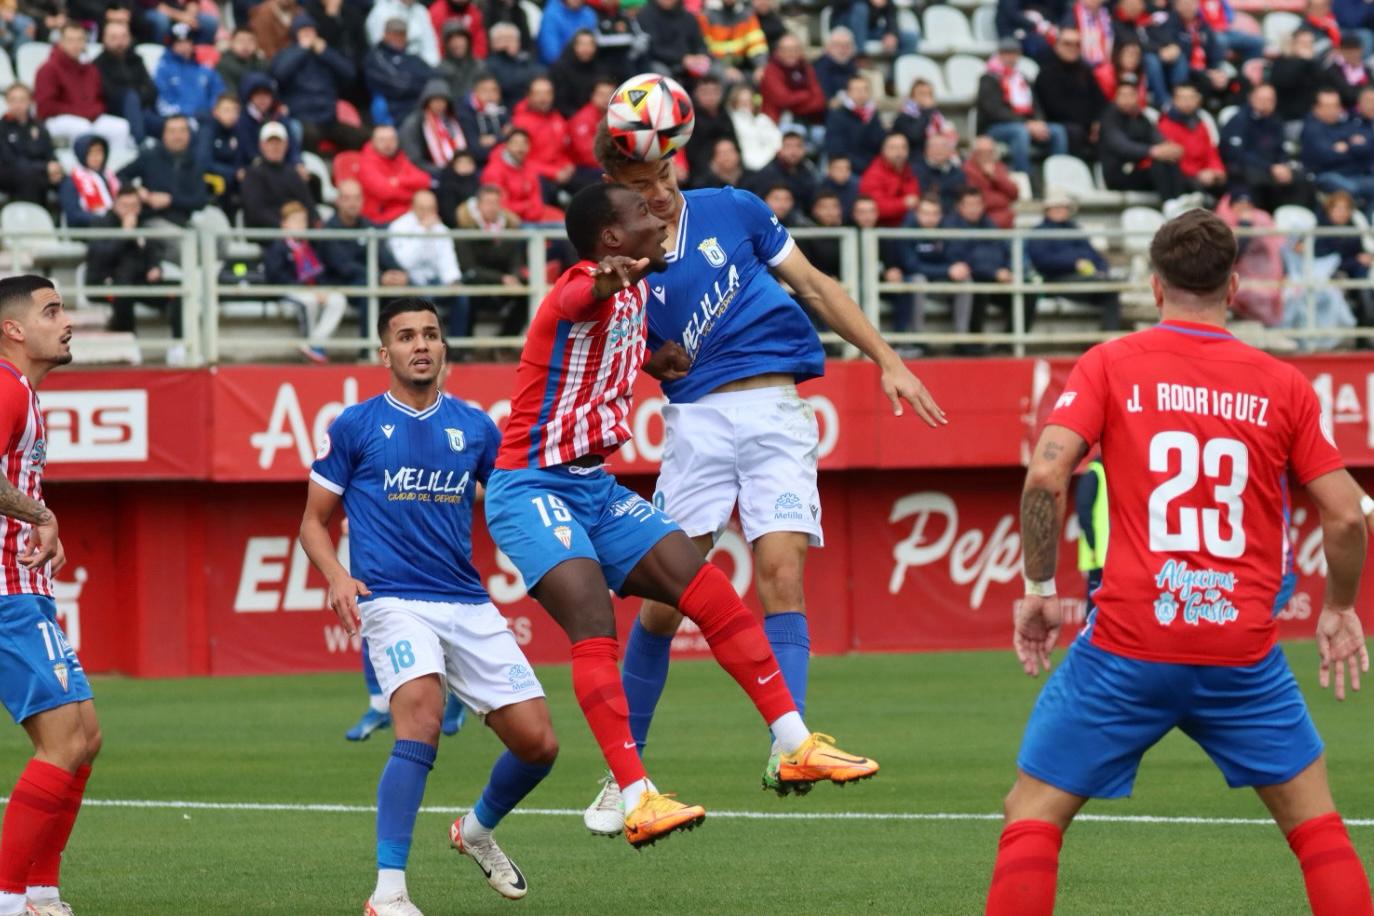 El Algeciras CF se impone a la UD Melilla y vuelve a ganar gracias a Javi... Montoya (1-0)